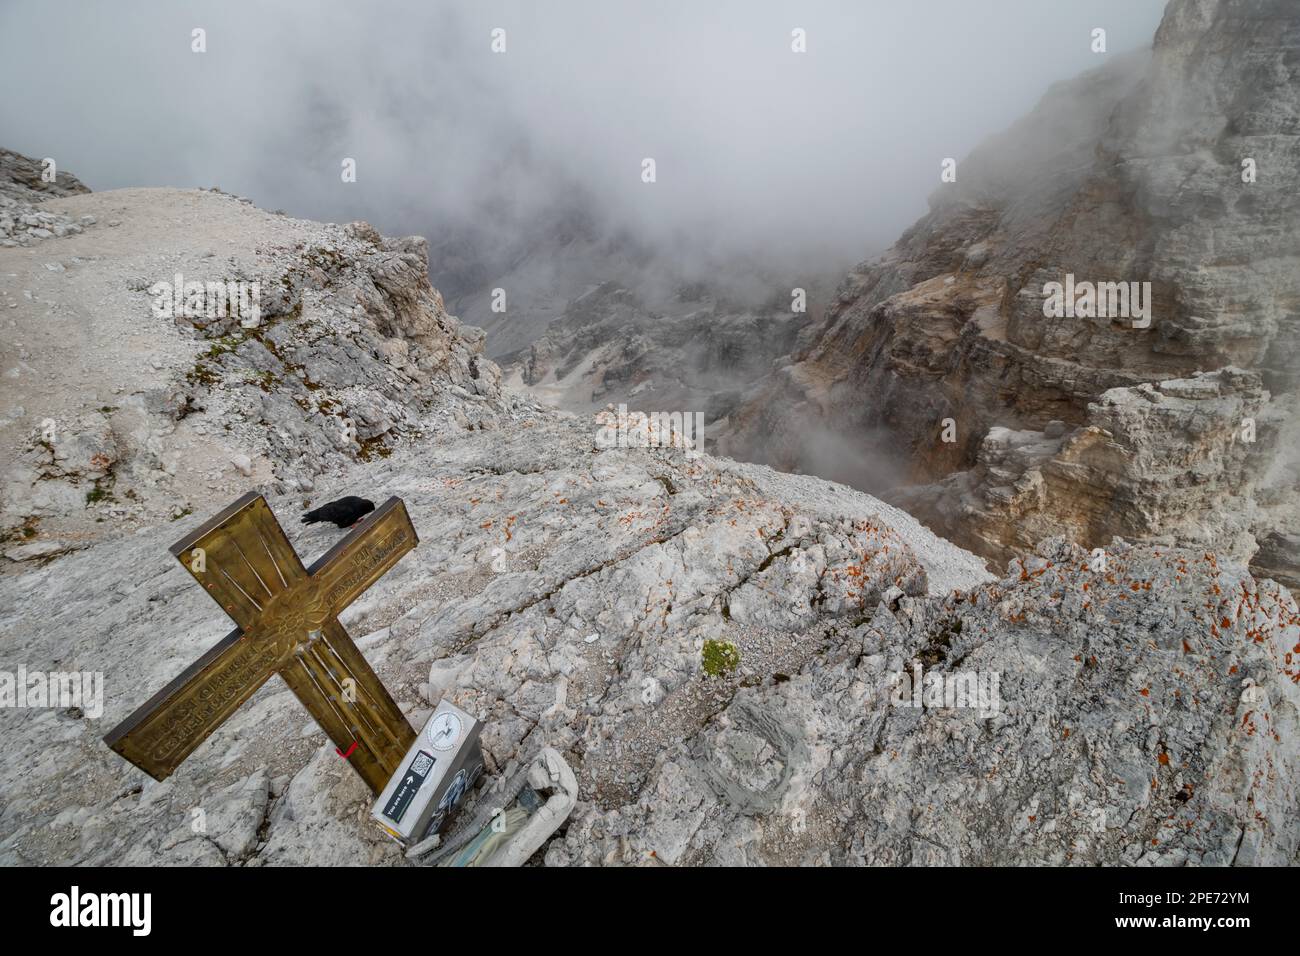 Vue cachée par les nuages du sommet de la Cima di Mezzo (3154 m) avec une belle croix sur le dessus., Dolomites, Italie, Europe Banque D'Images